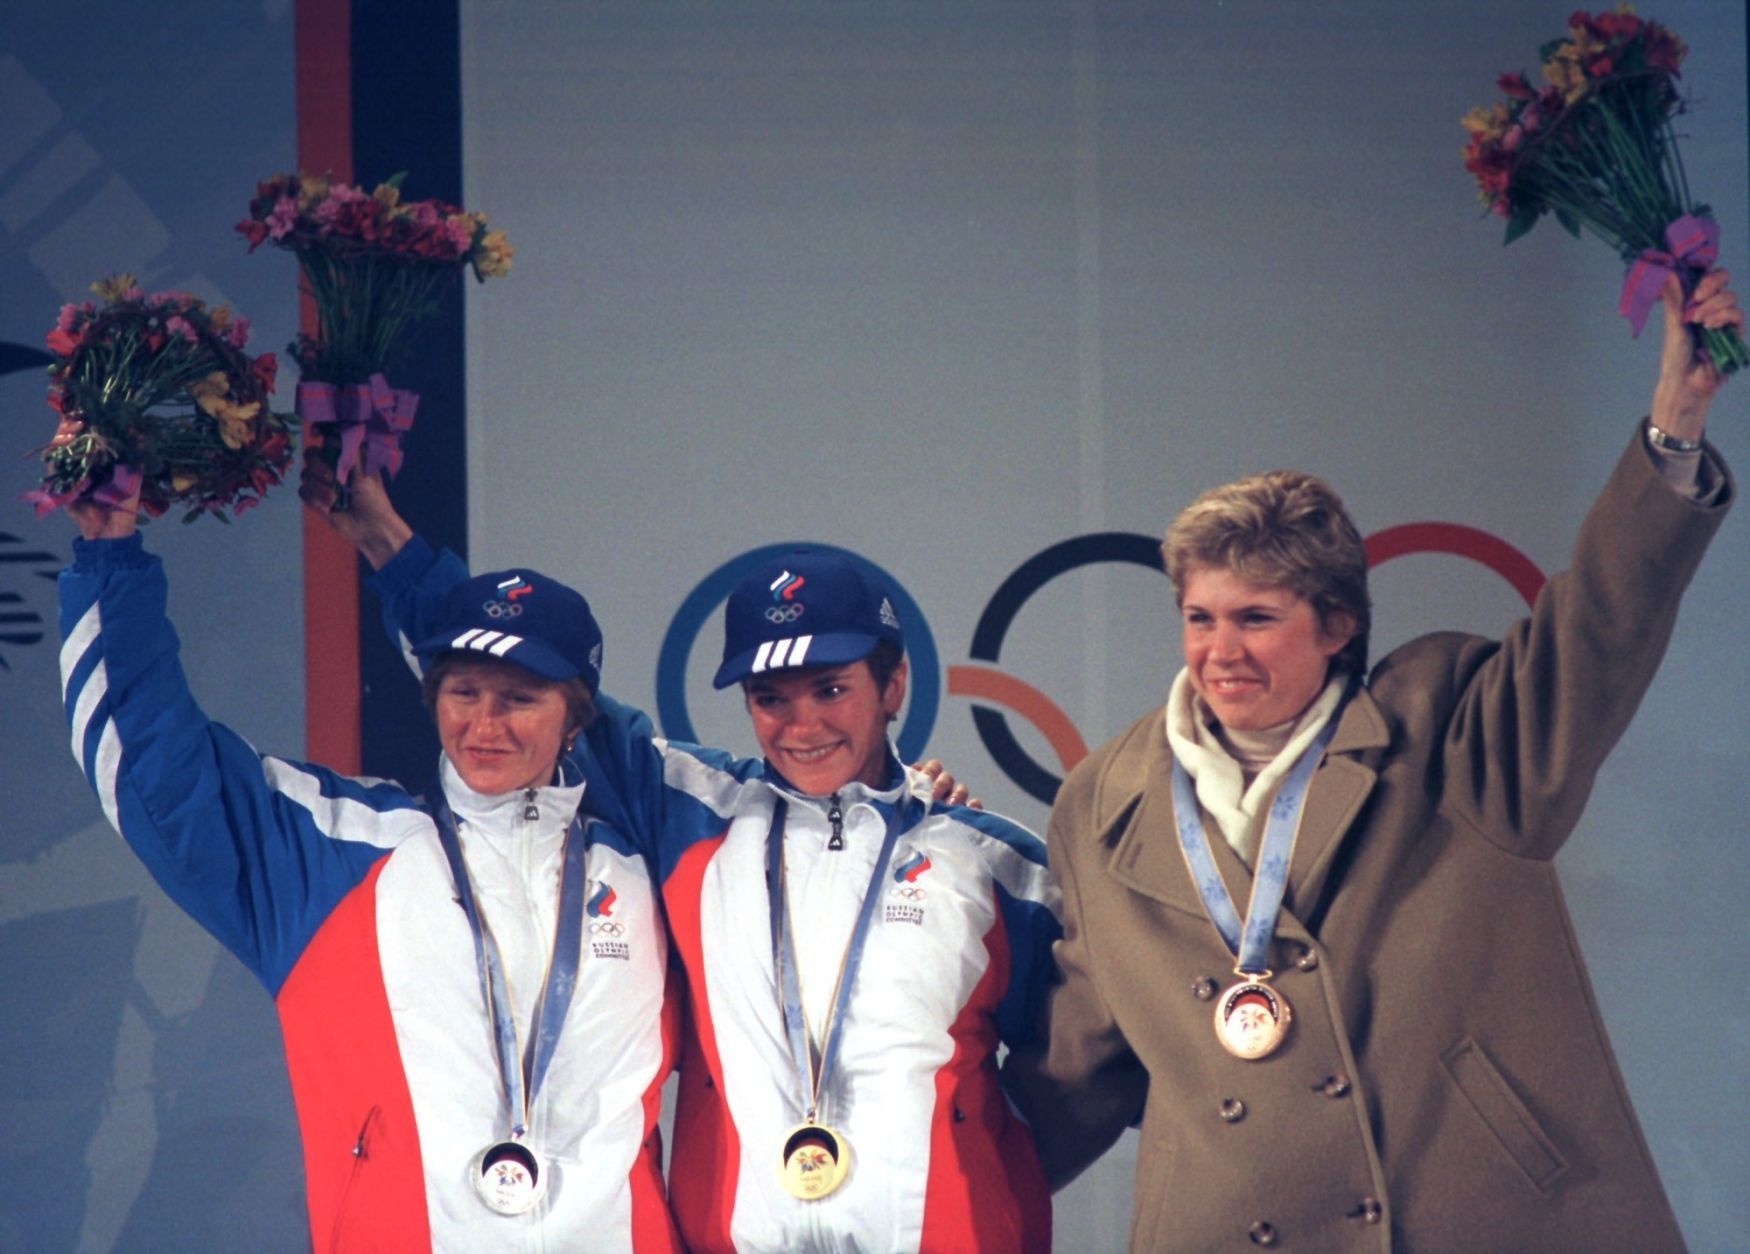 Kateřina Neumannová v kabátu na stupních vítězů na olympijských hrách v Naganu s Ruskami Larisou Lazutinovou a Olgou Danilovovou